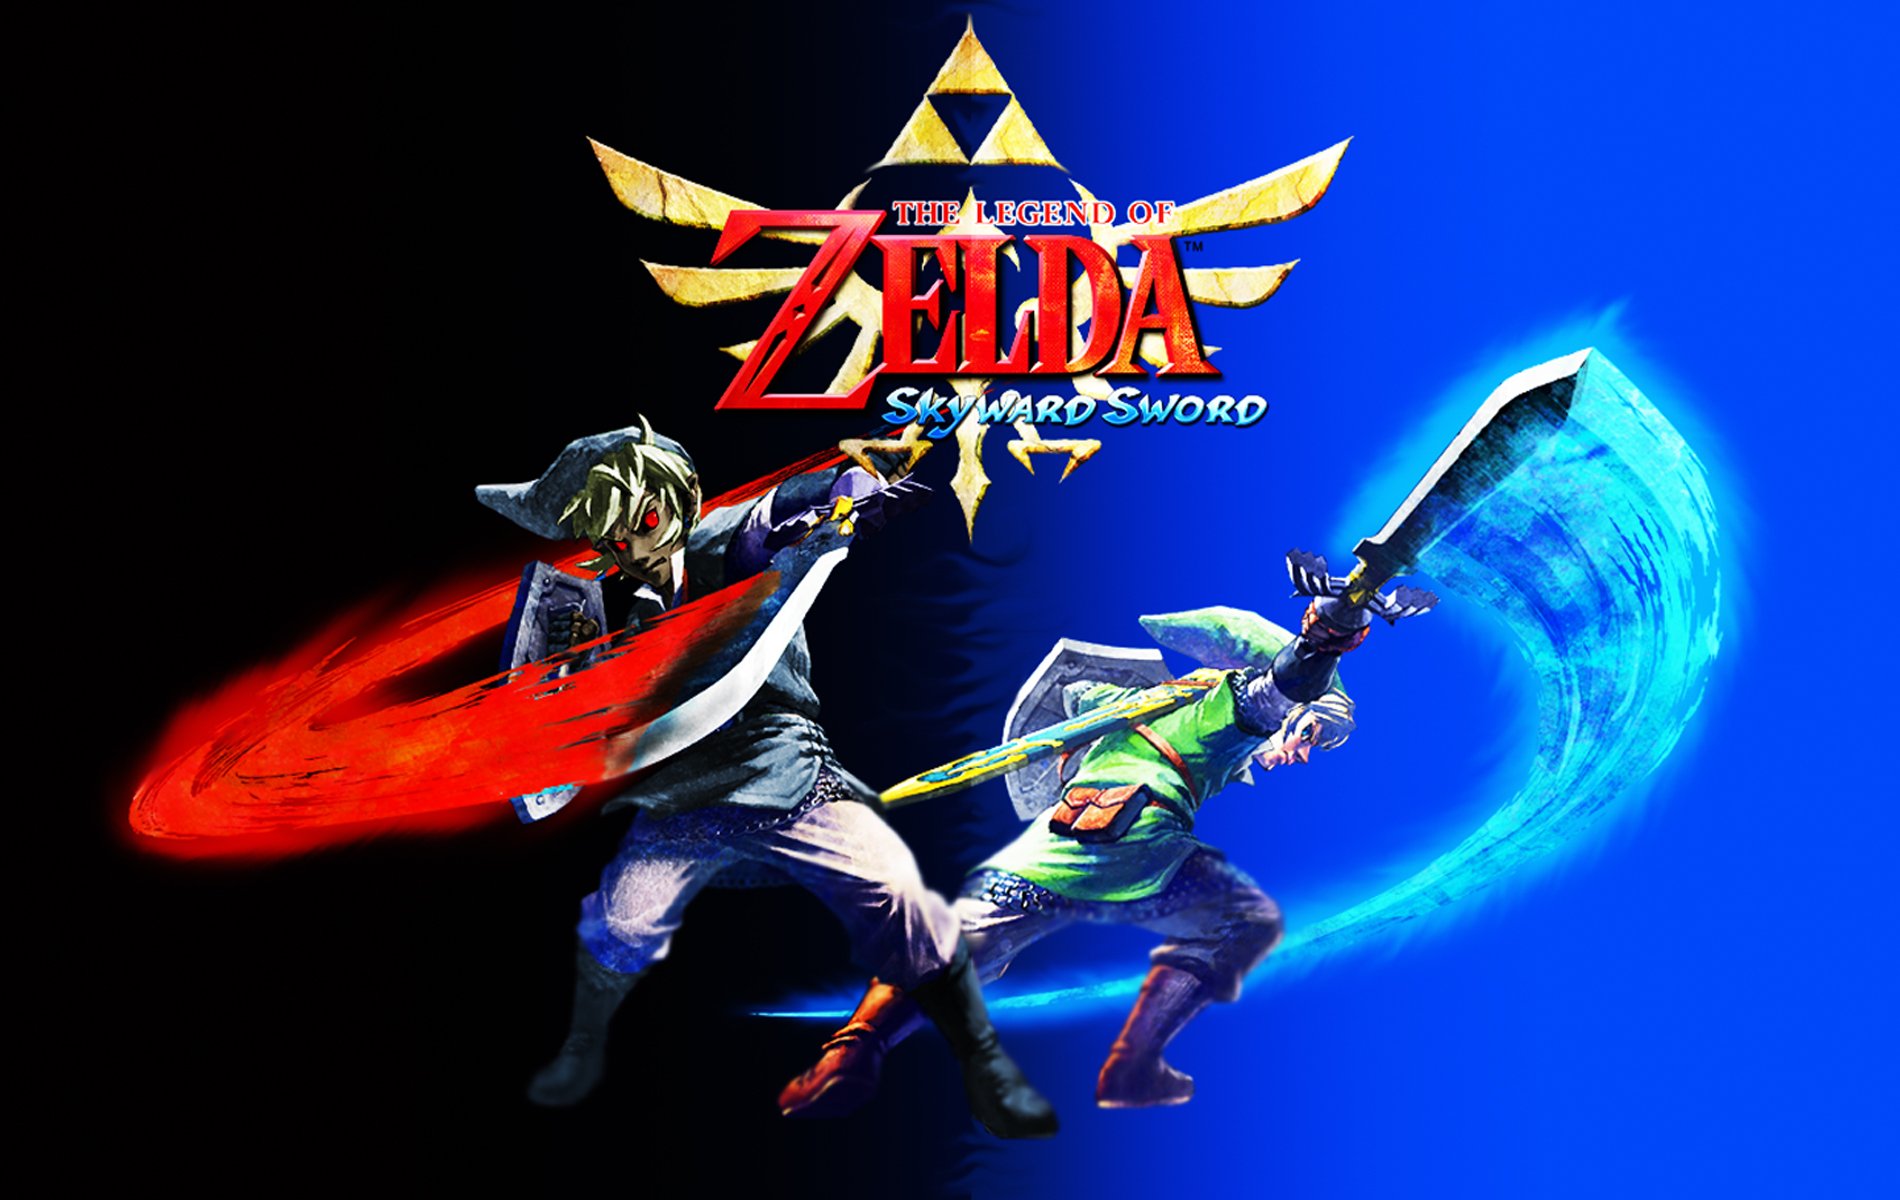 Link The Legend Of Zelda Skyward Sword Wallpaper